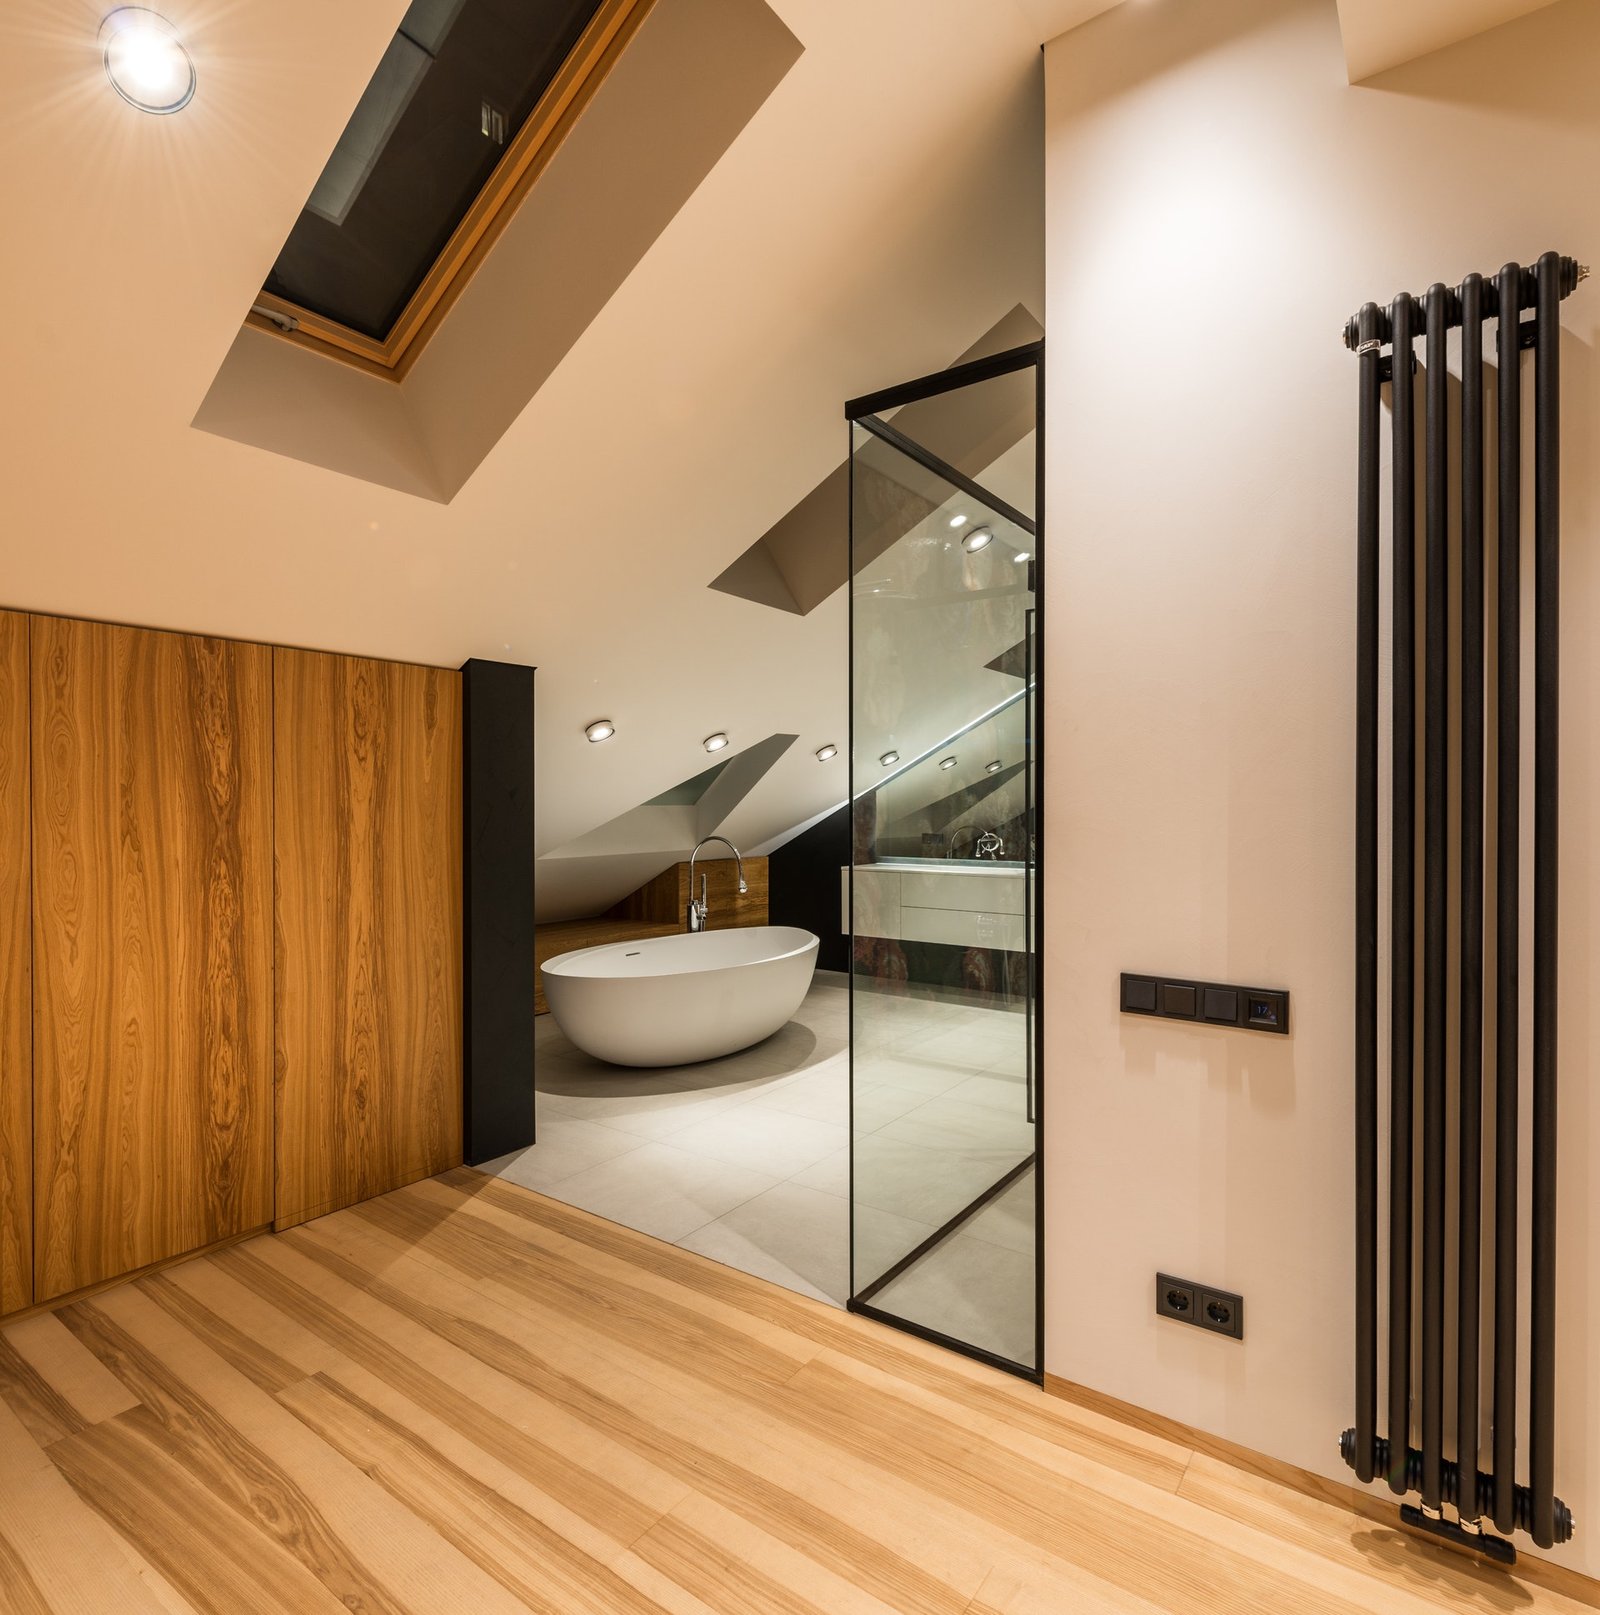 How To Design A Timber Bathroom?